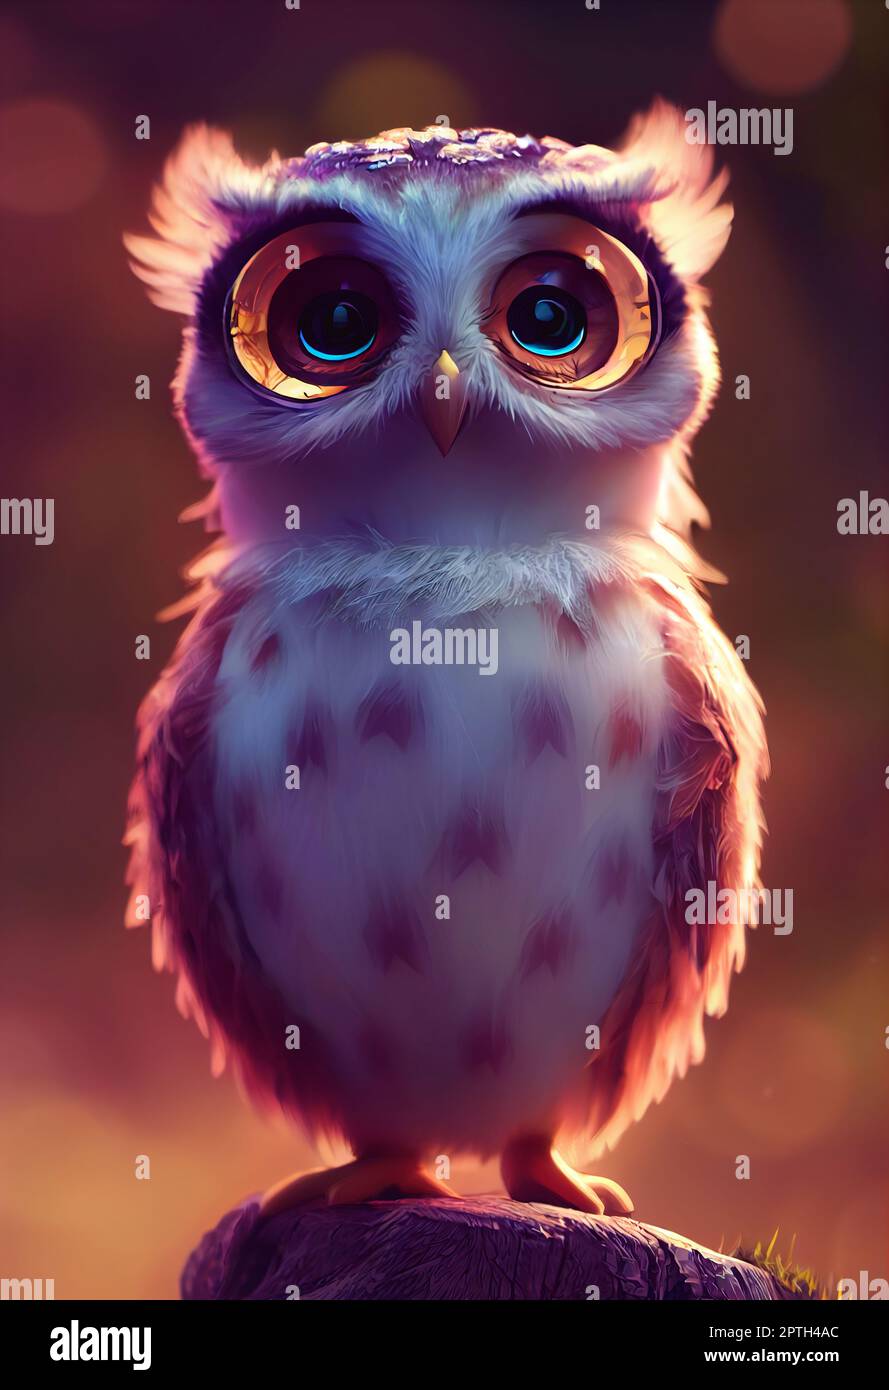 ArtStation - Owl girl design